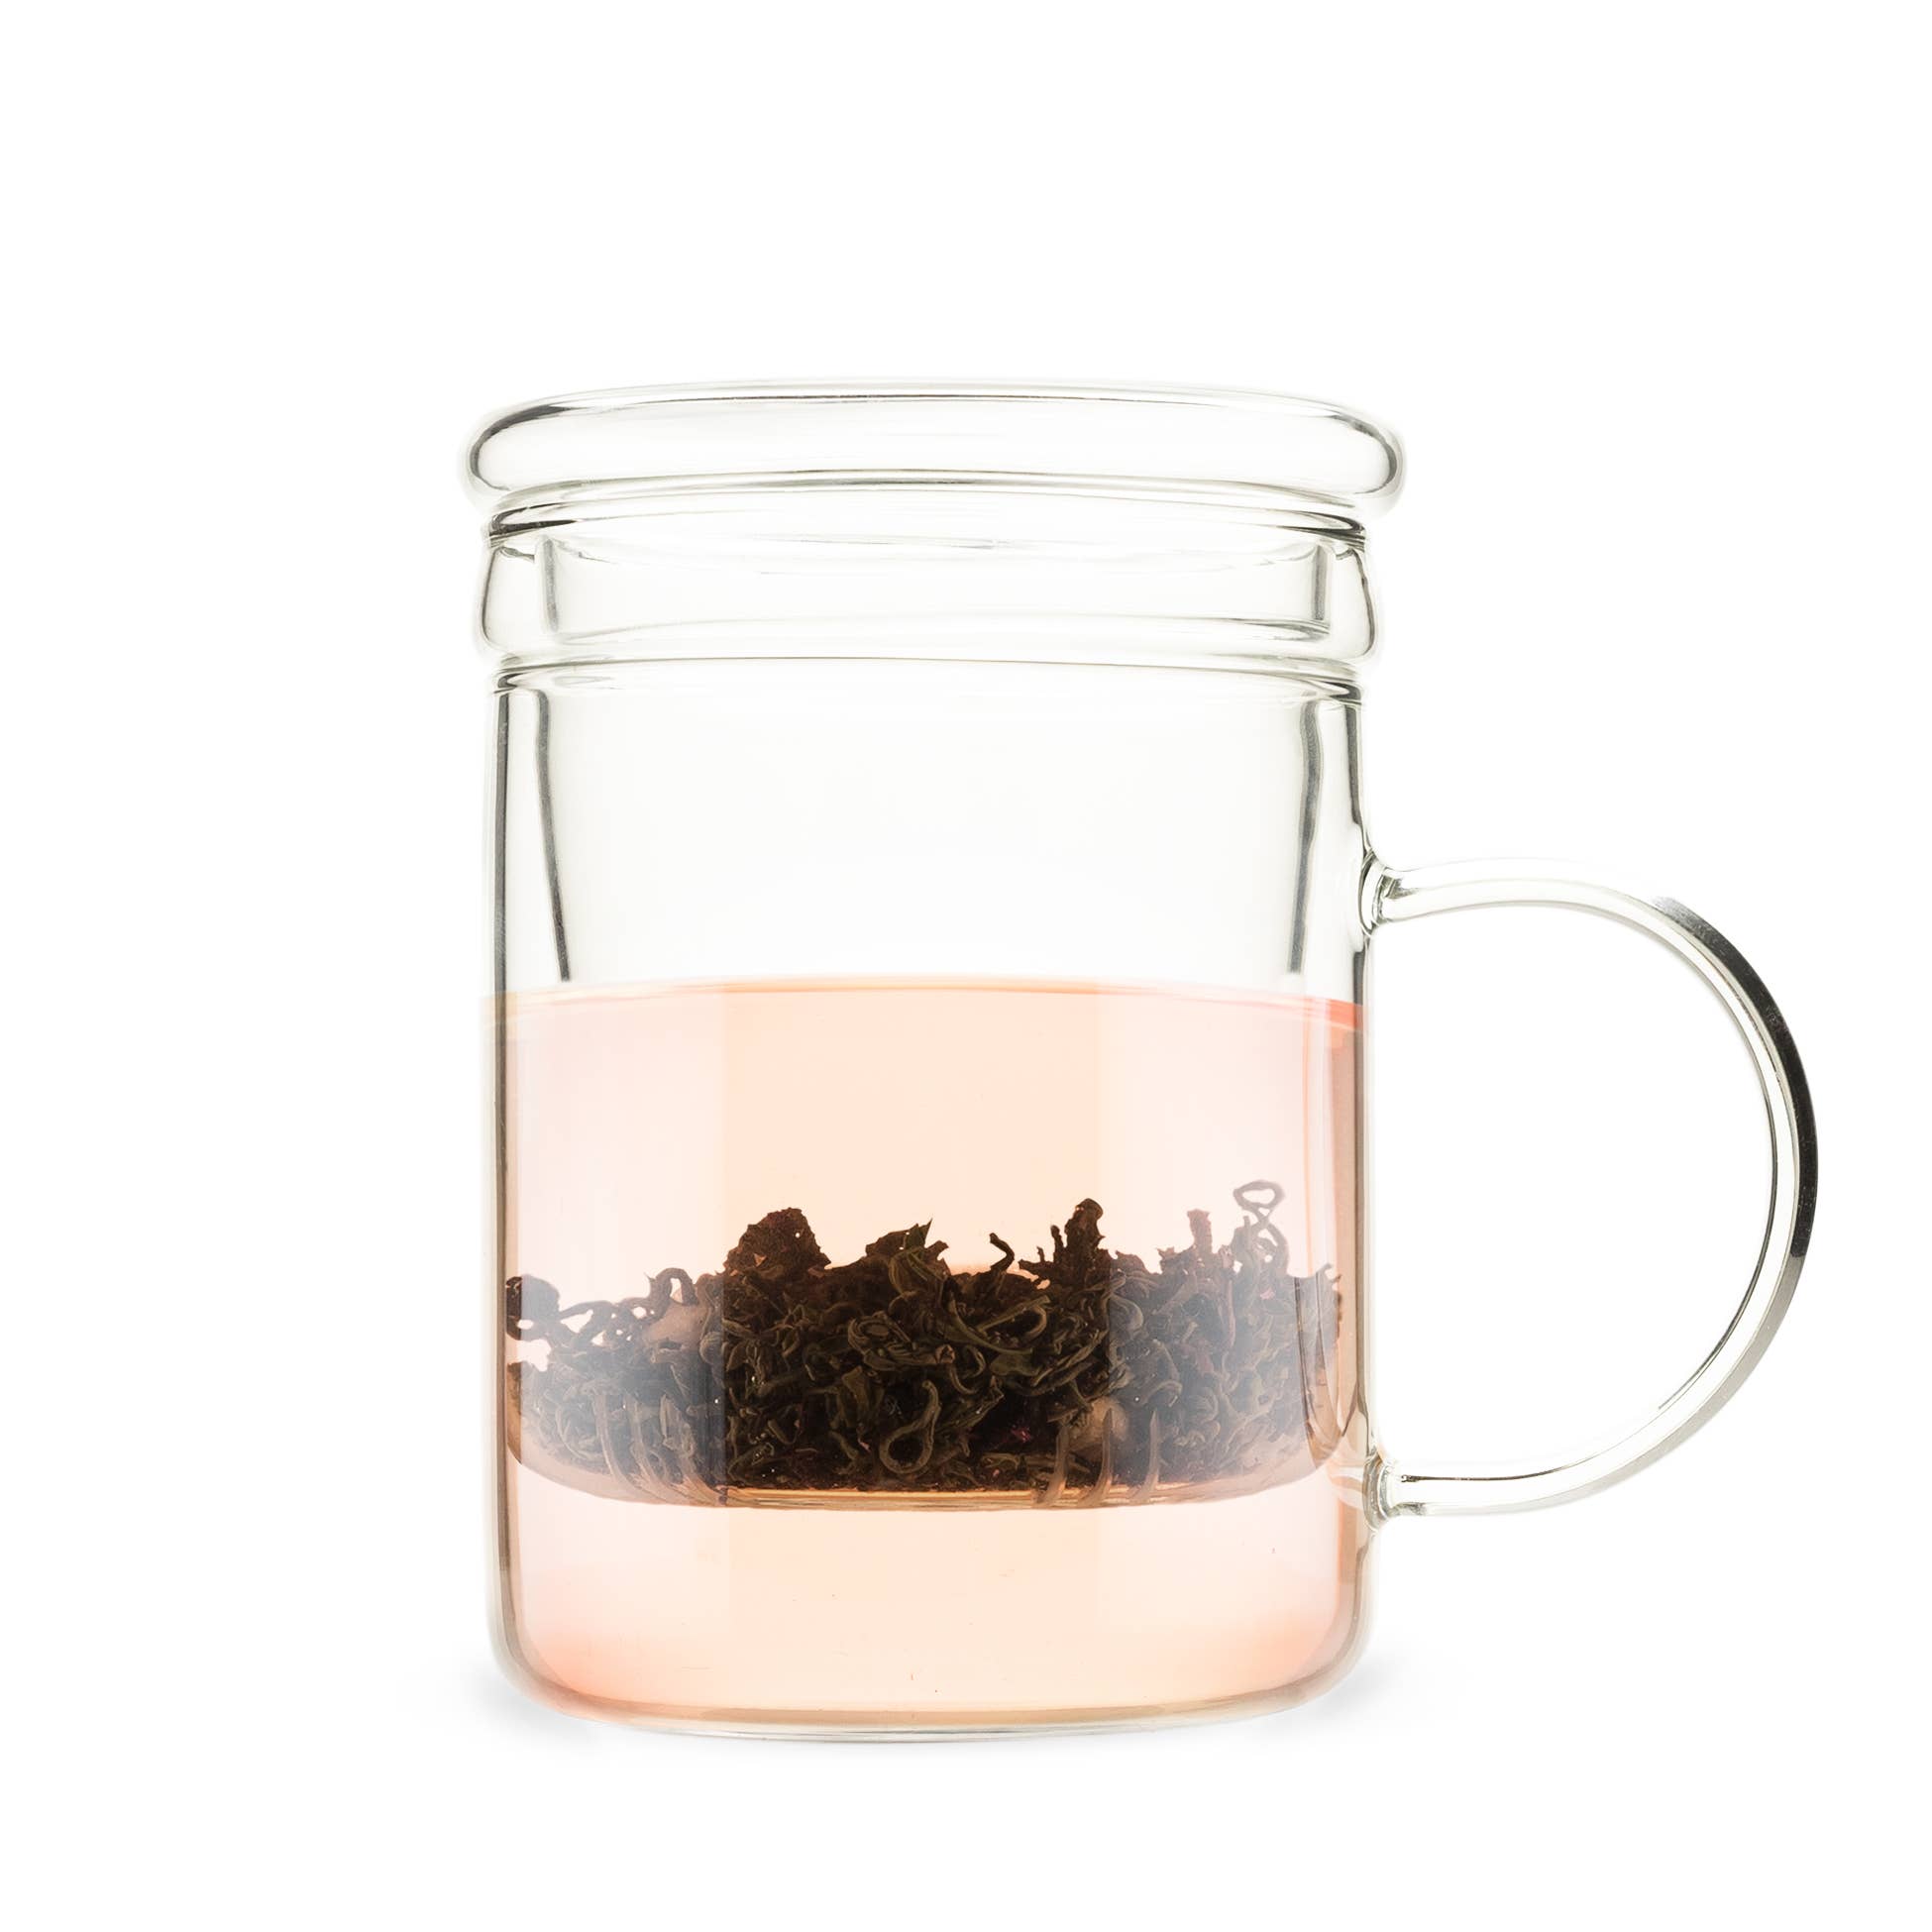 Blake™ Glass Loose Leaf Tea Infuser Mug w/Lid